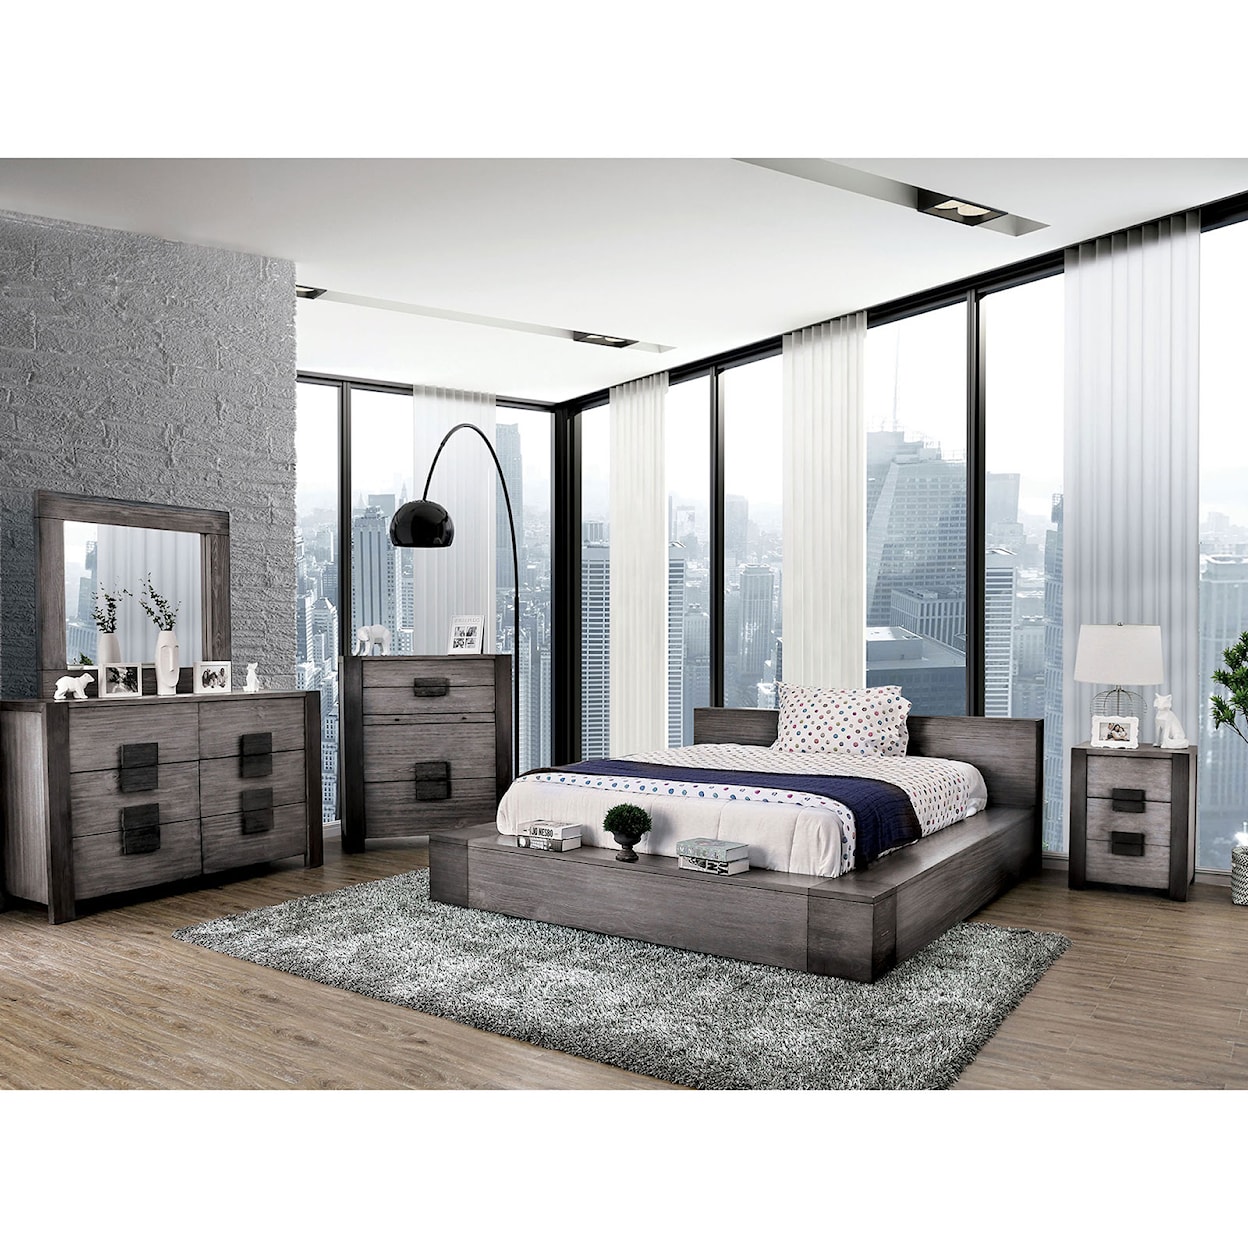 Furniture of America Janeiro 4-Piece Queen Bedroom Set